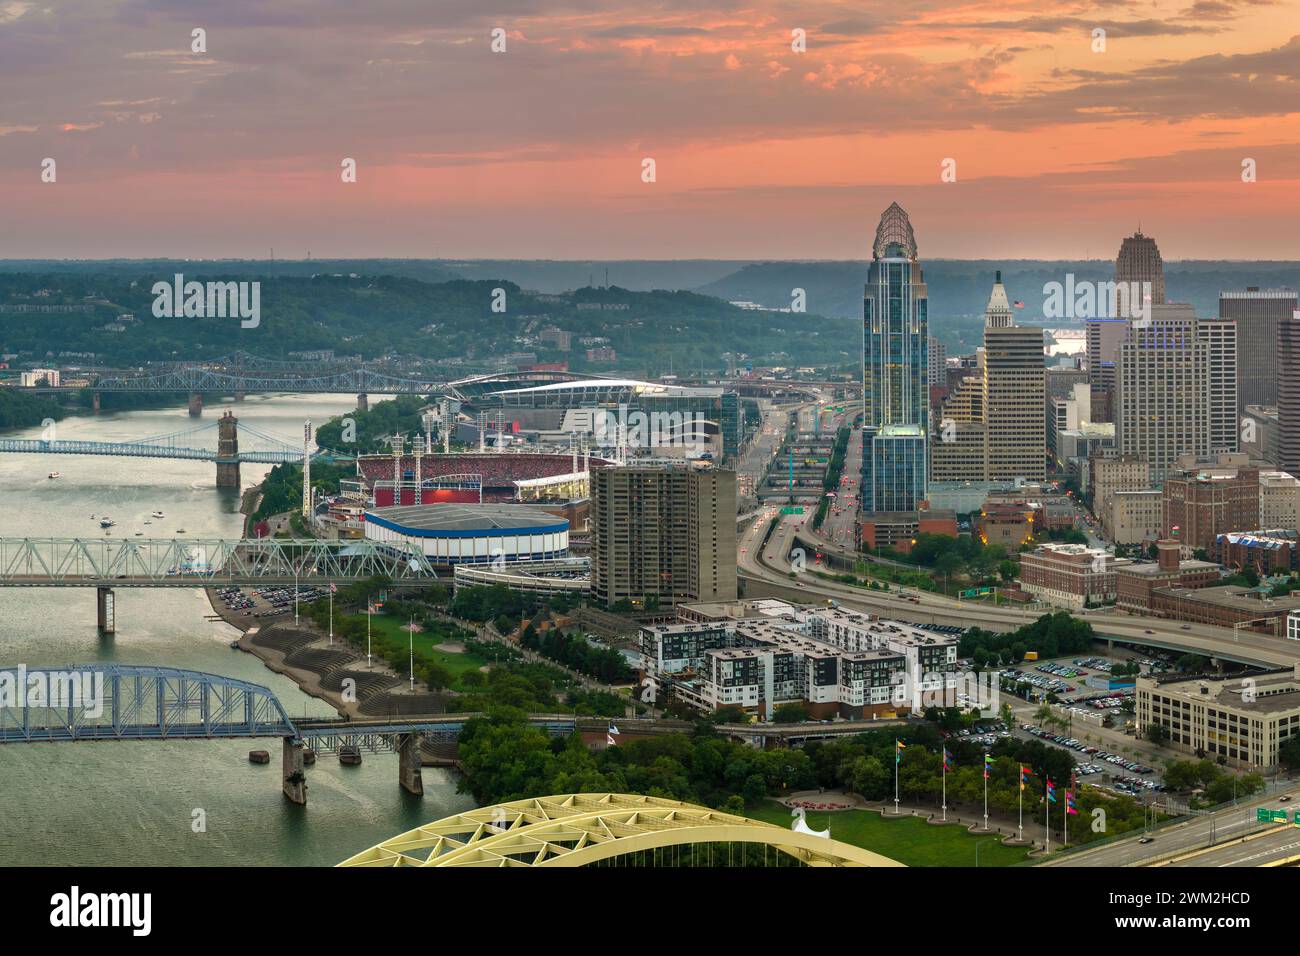 Città di Cincinnati, nello stato dell'Ohio, con alti grattacieli illuminati e luminosi nel quartiere del centro. La megapolis americana con affari finanziari Foto Stock